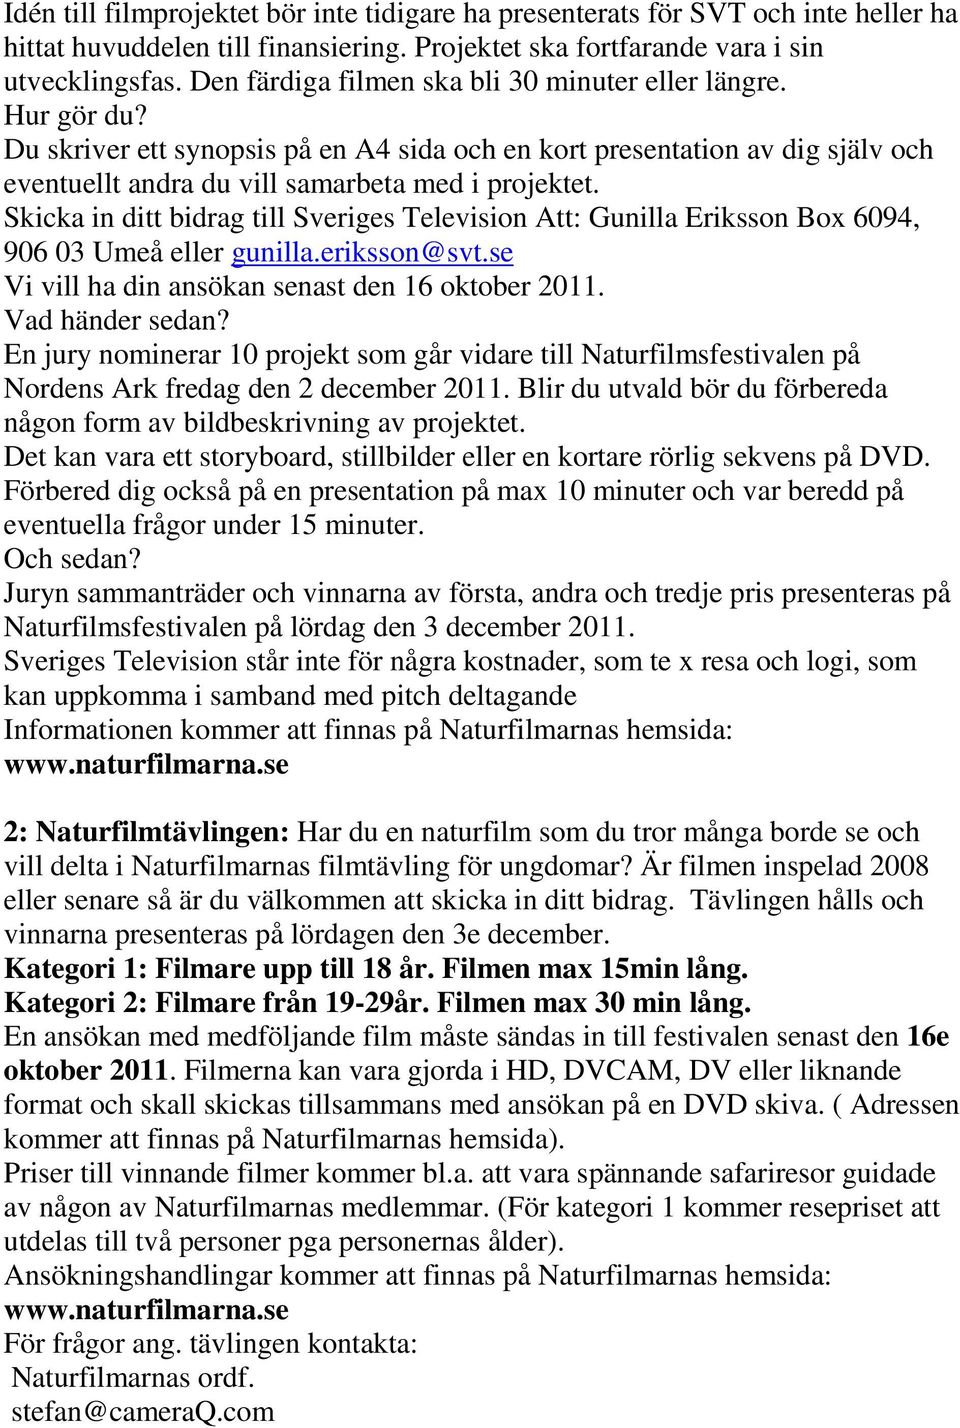 Skicka in ditt bidrag till Sveriges Television Att: Gunilla Eriksson Box 6094, 906 03 Umeå eller gunilla.eriksson@svt.se Vi vill ha din ansökan senast den 16 oktober 2011. Vad händer sedan?